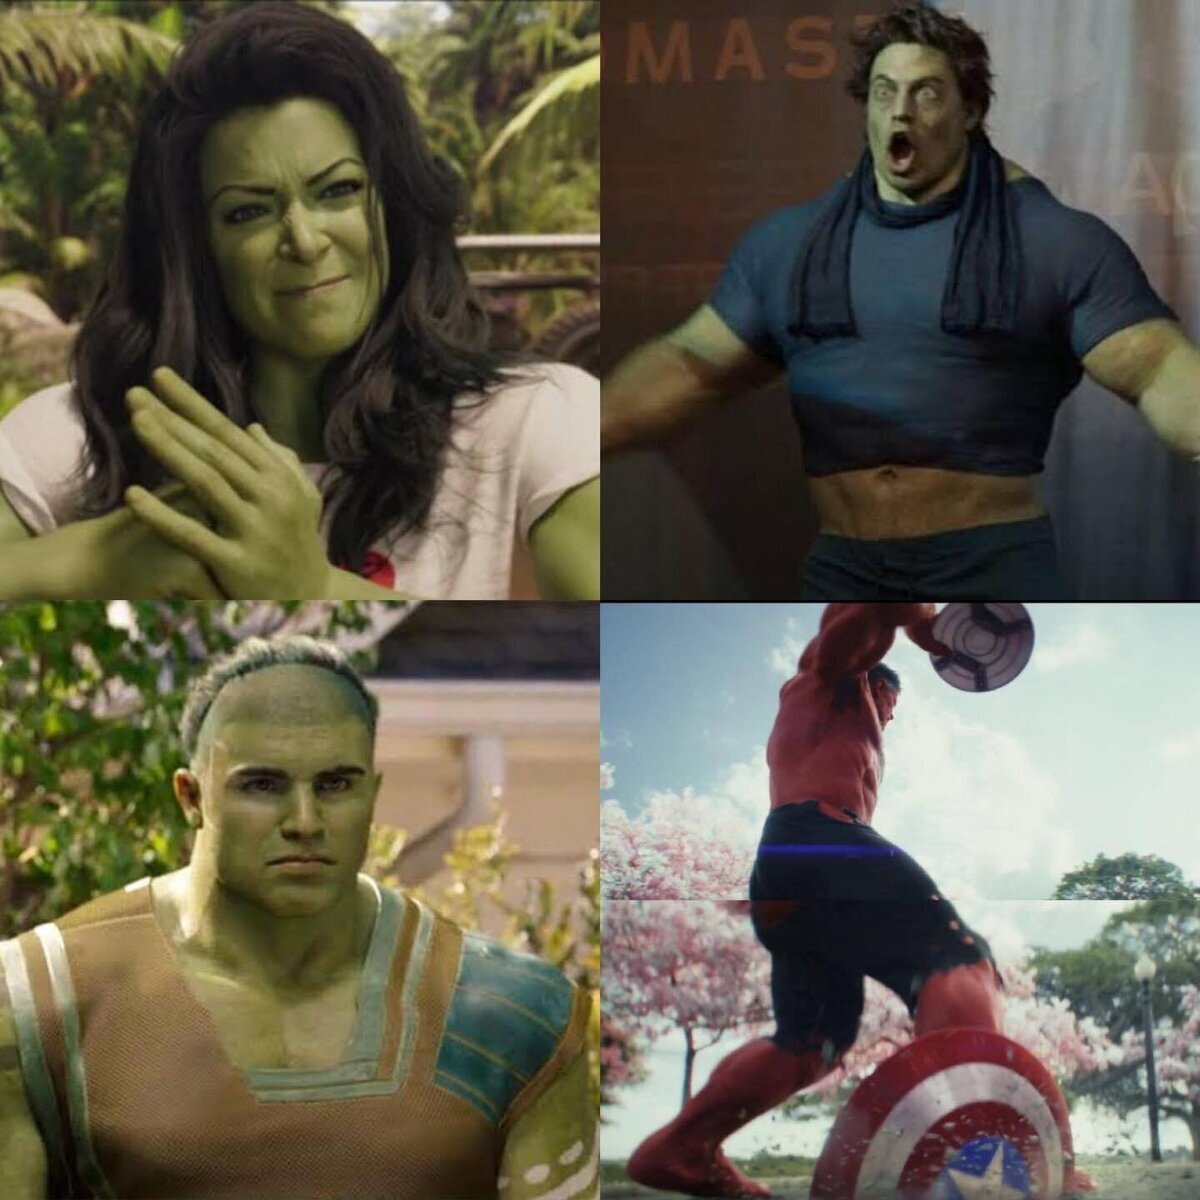 Dad vuestra opinión sobre los nuevos Hulks. Si es con insultos, mejor